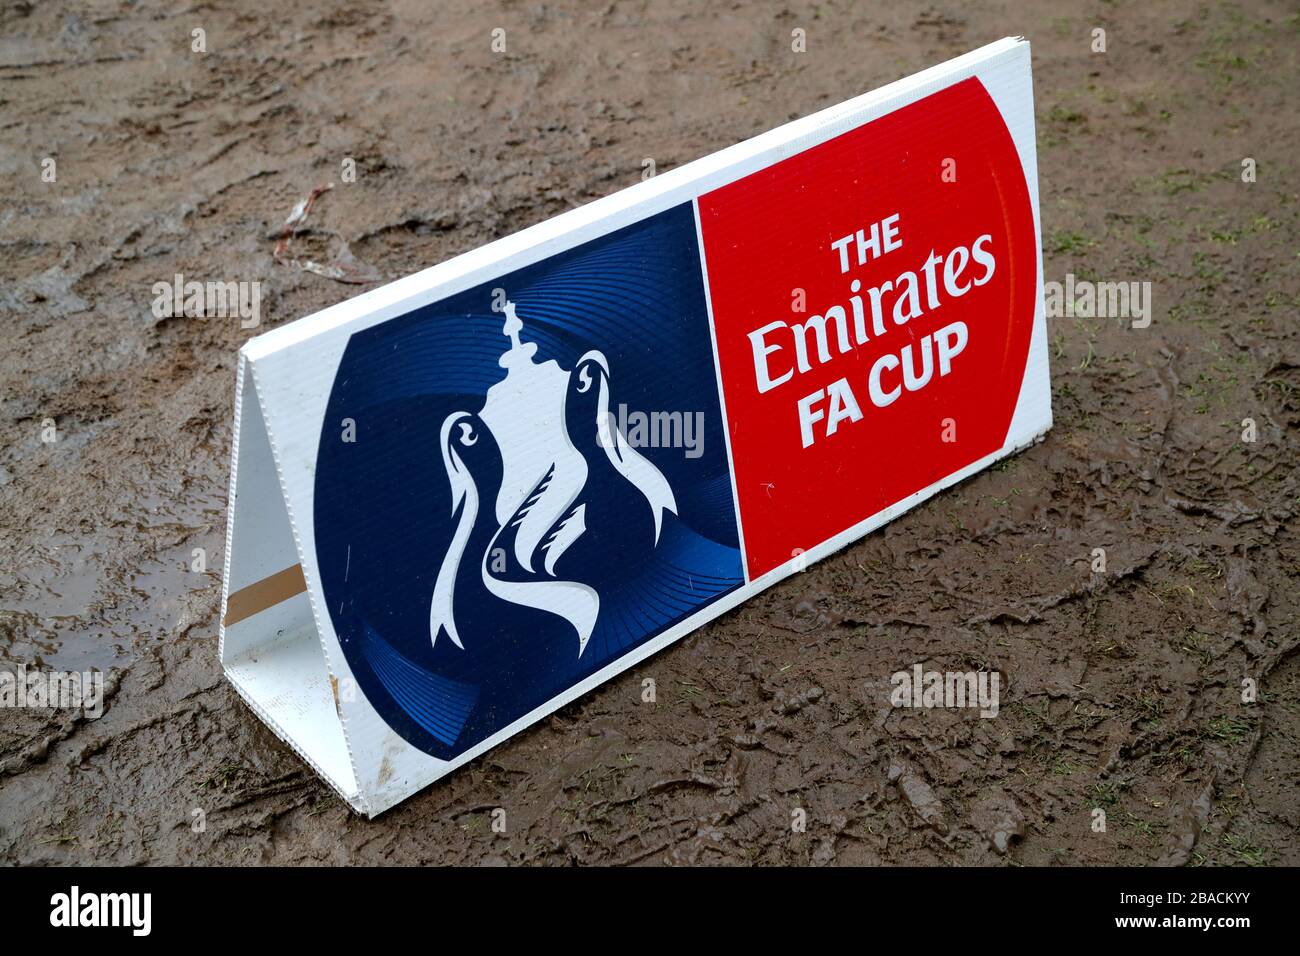 Allgemeiner Blick auf die Emirates FA Cup Beschilderung im Schlamm Stockfoto